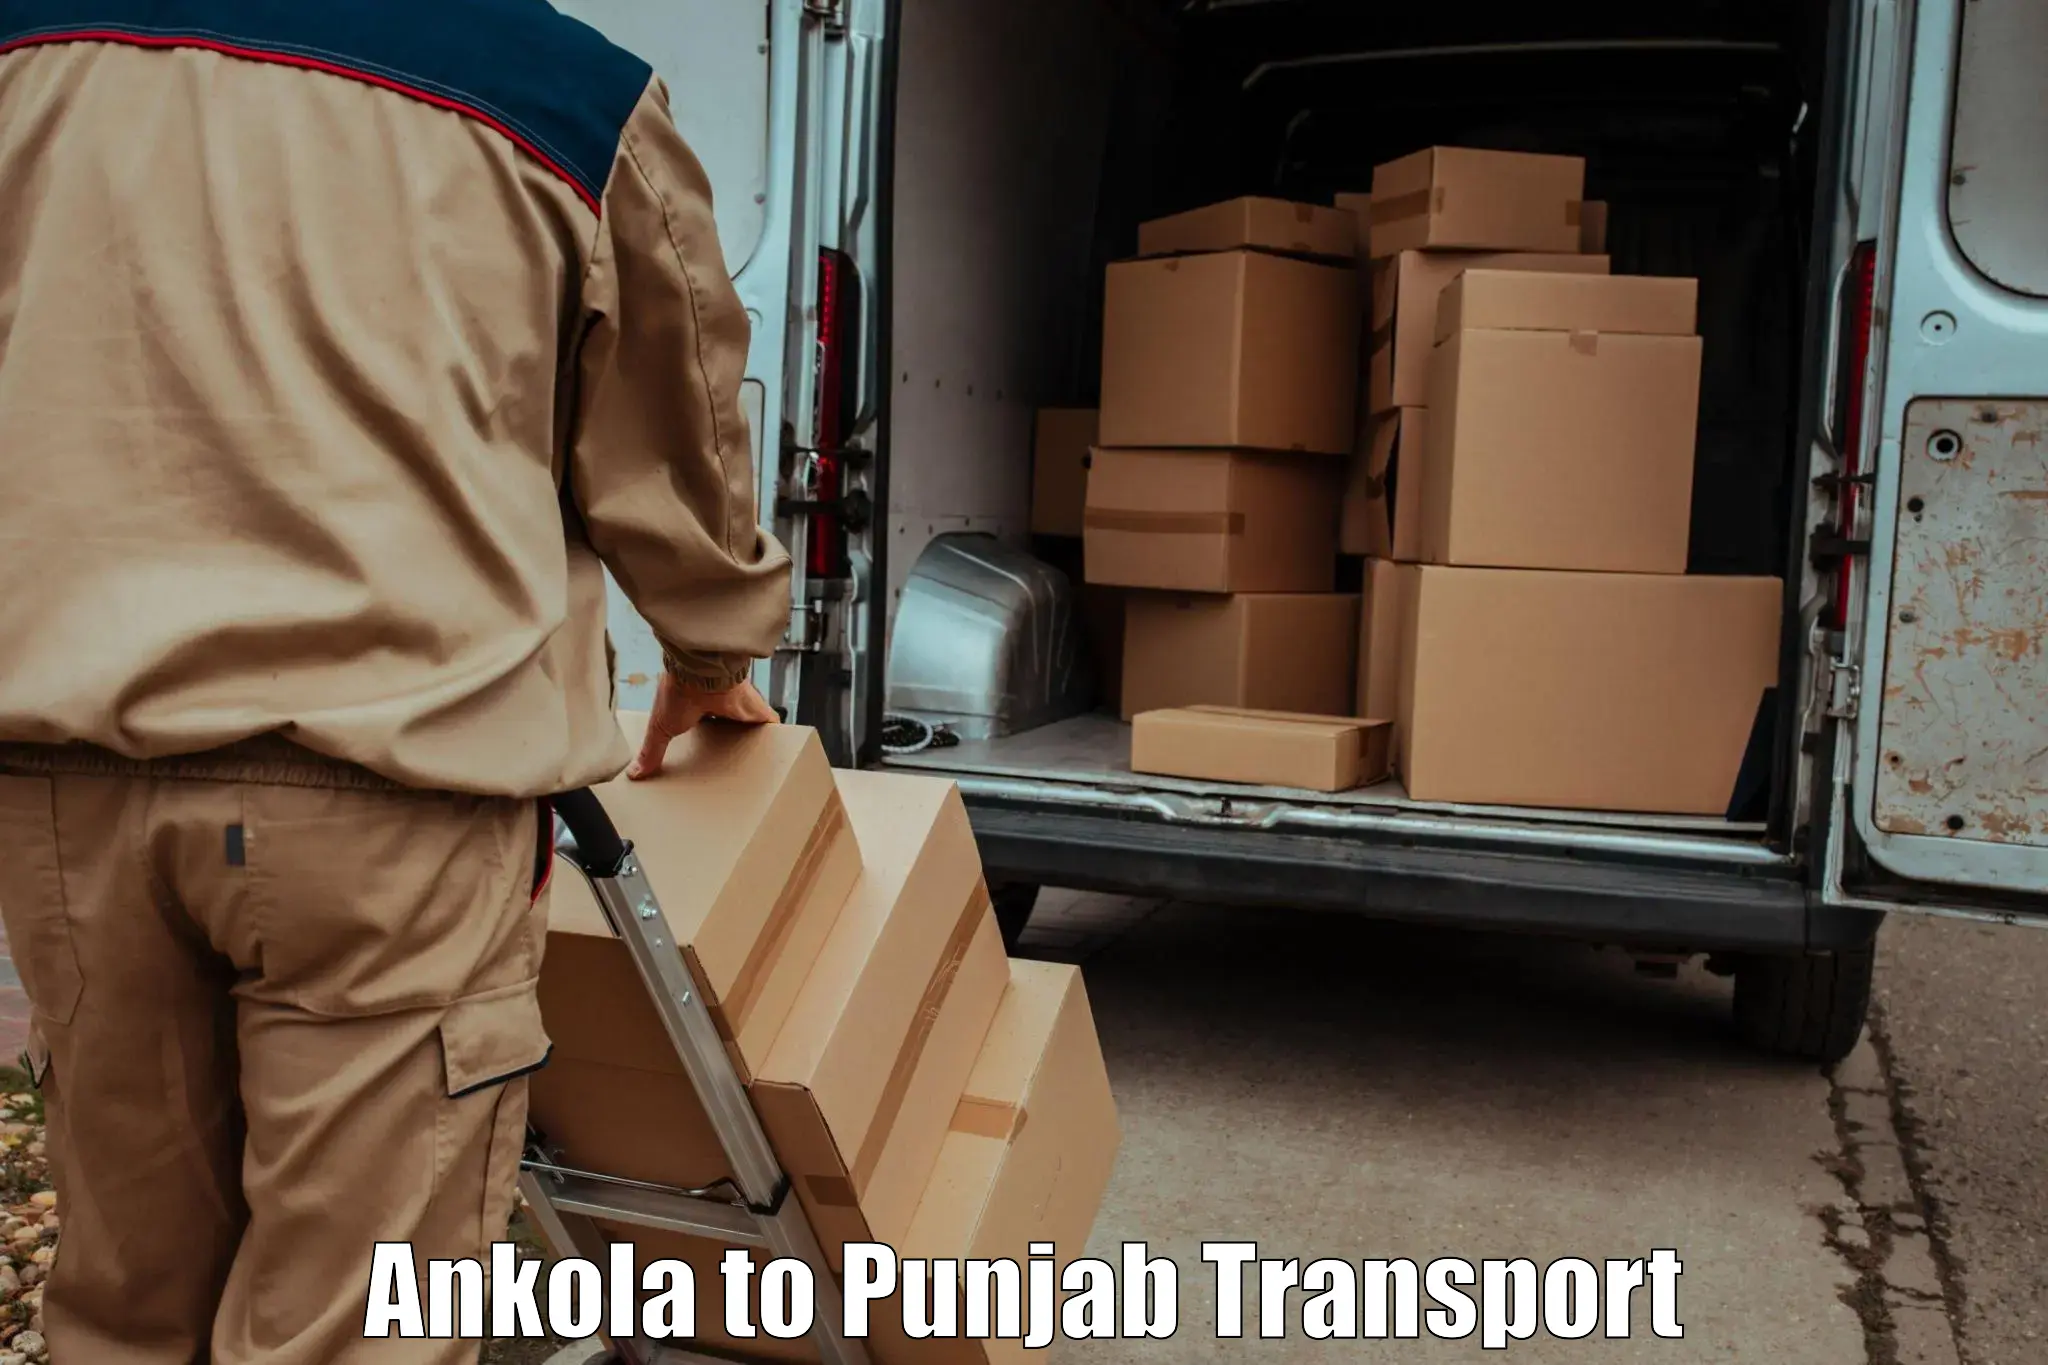 Nearest transport service Ankola to Punjab